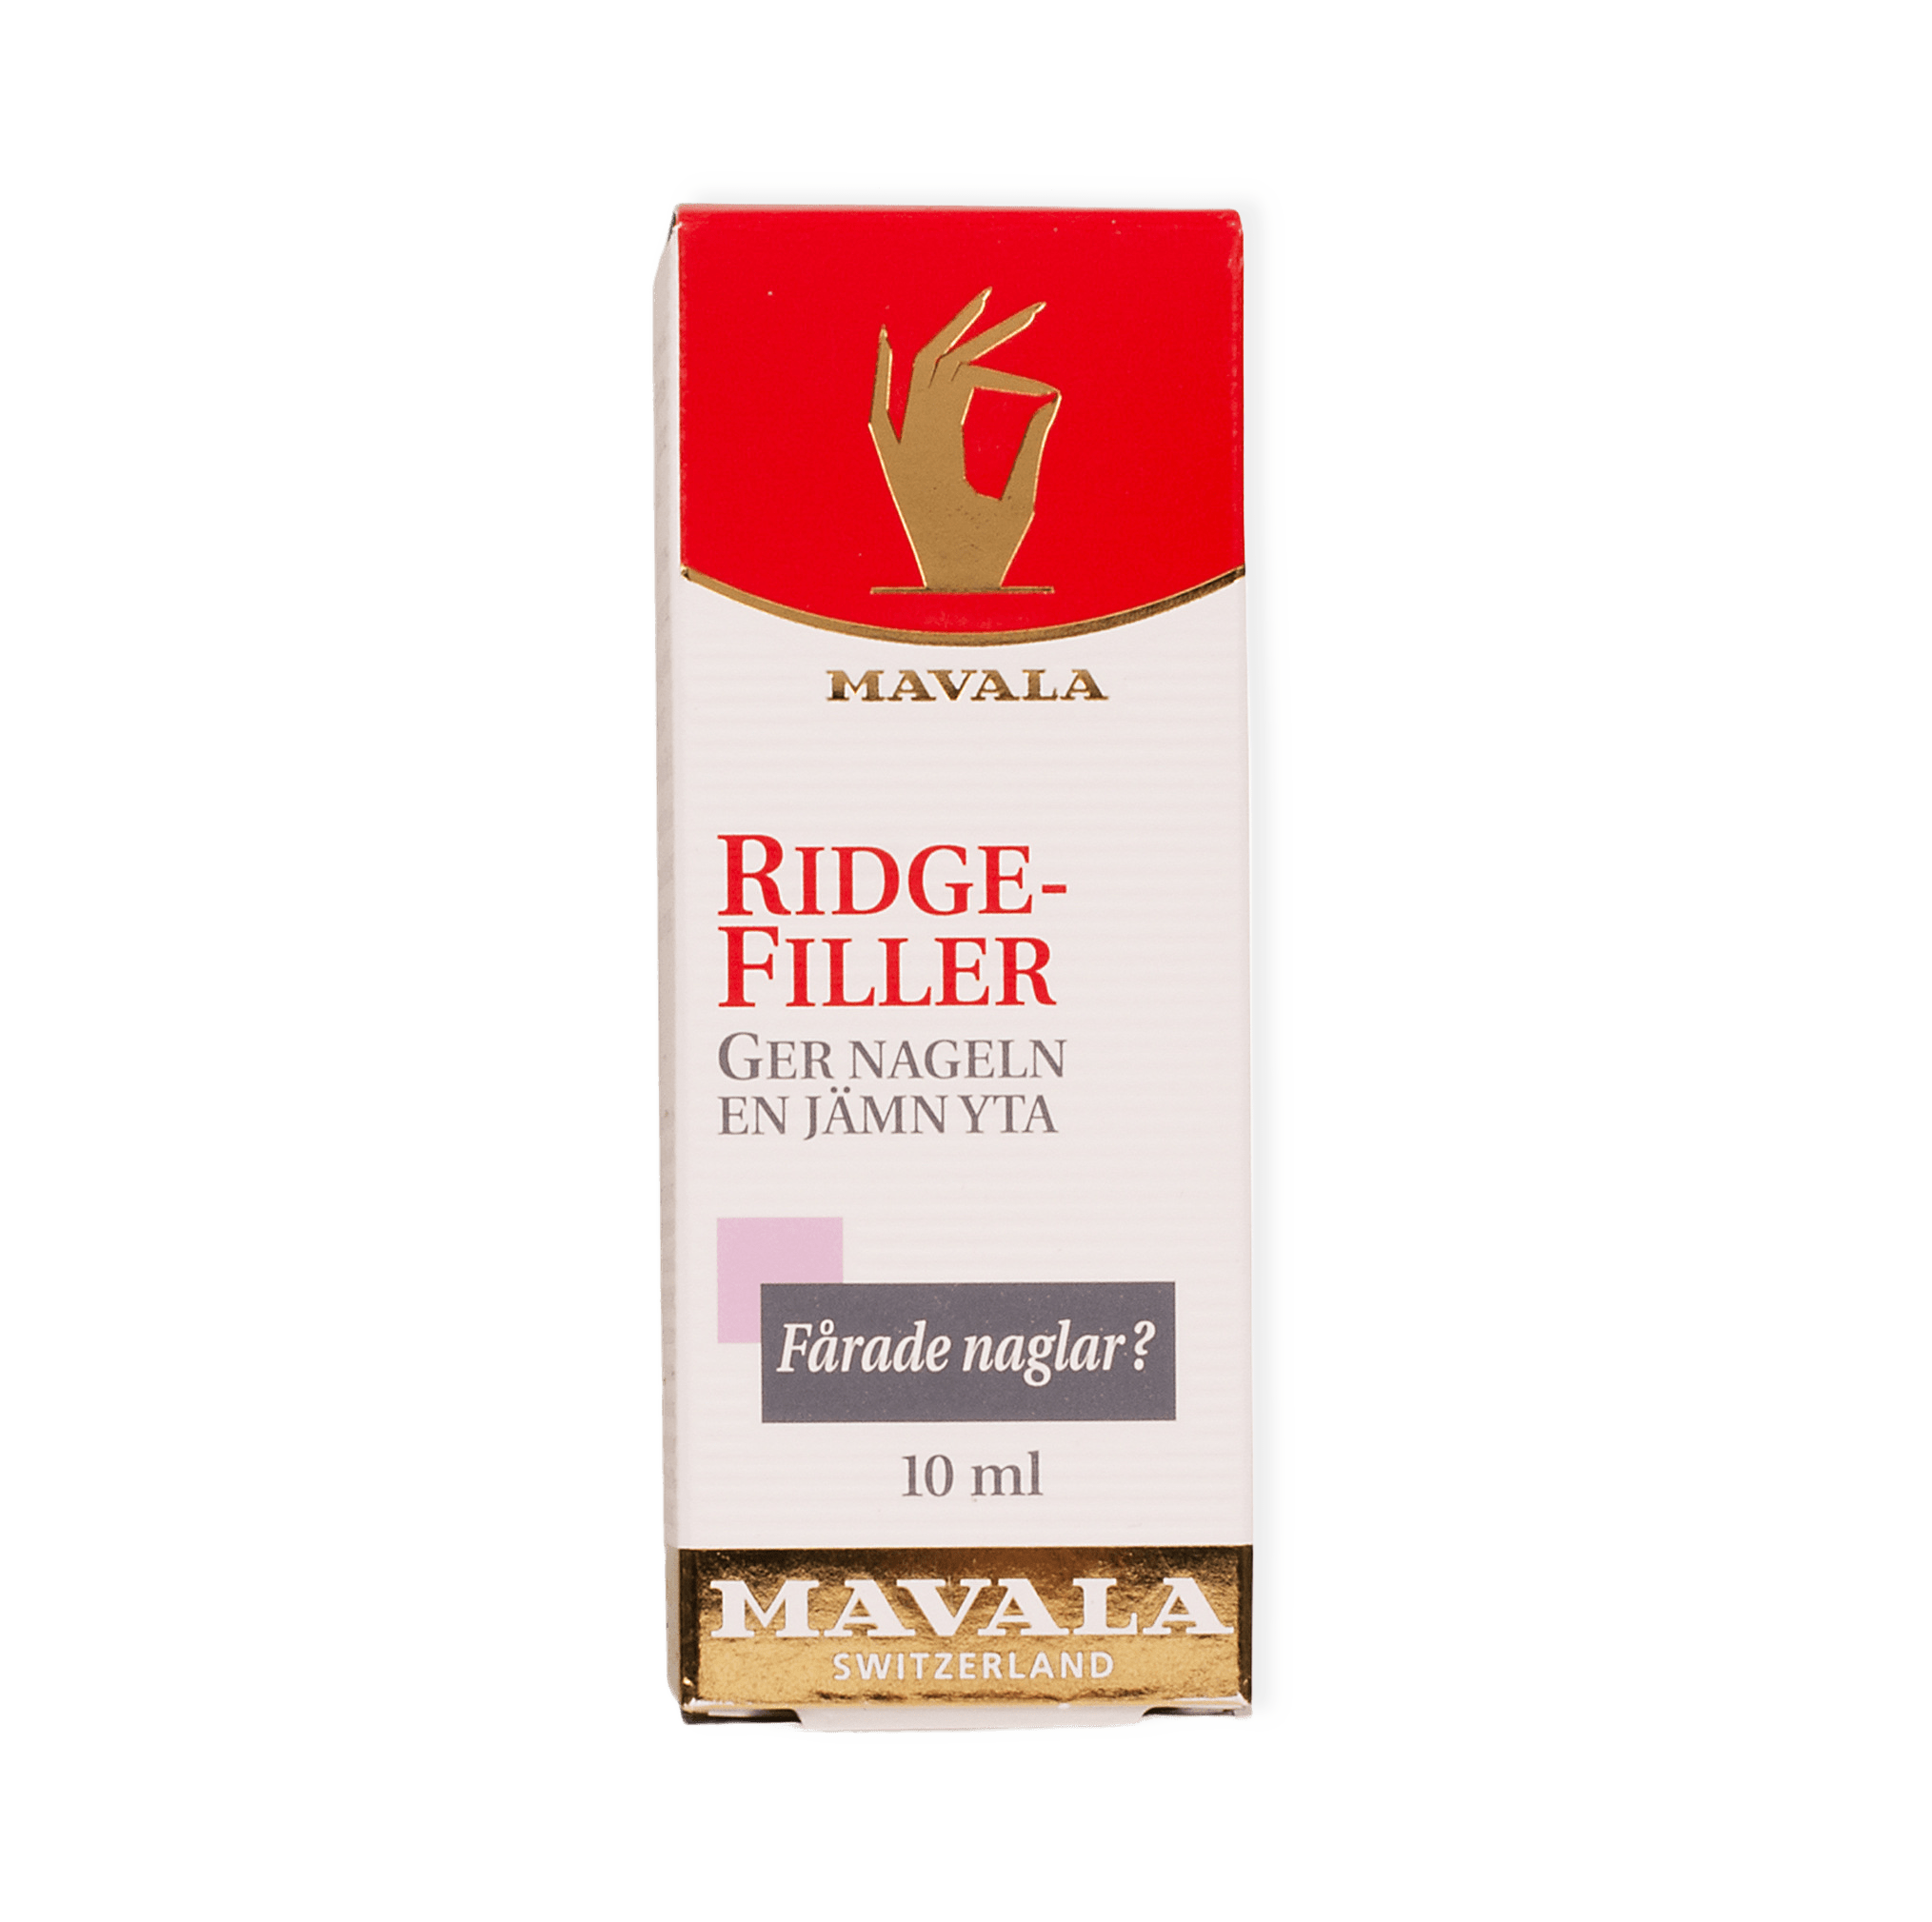 Ridgefiller, 10 ml från Mavala